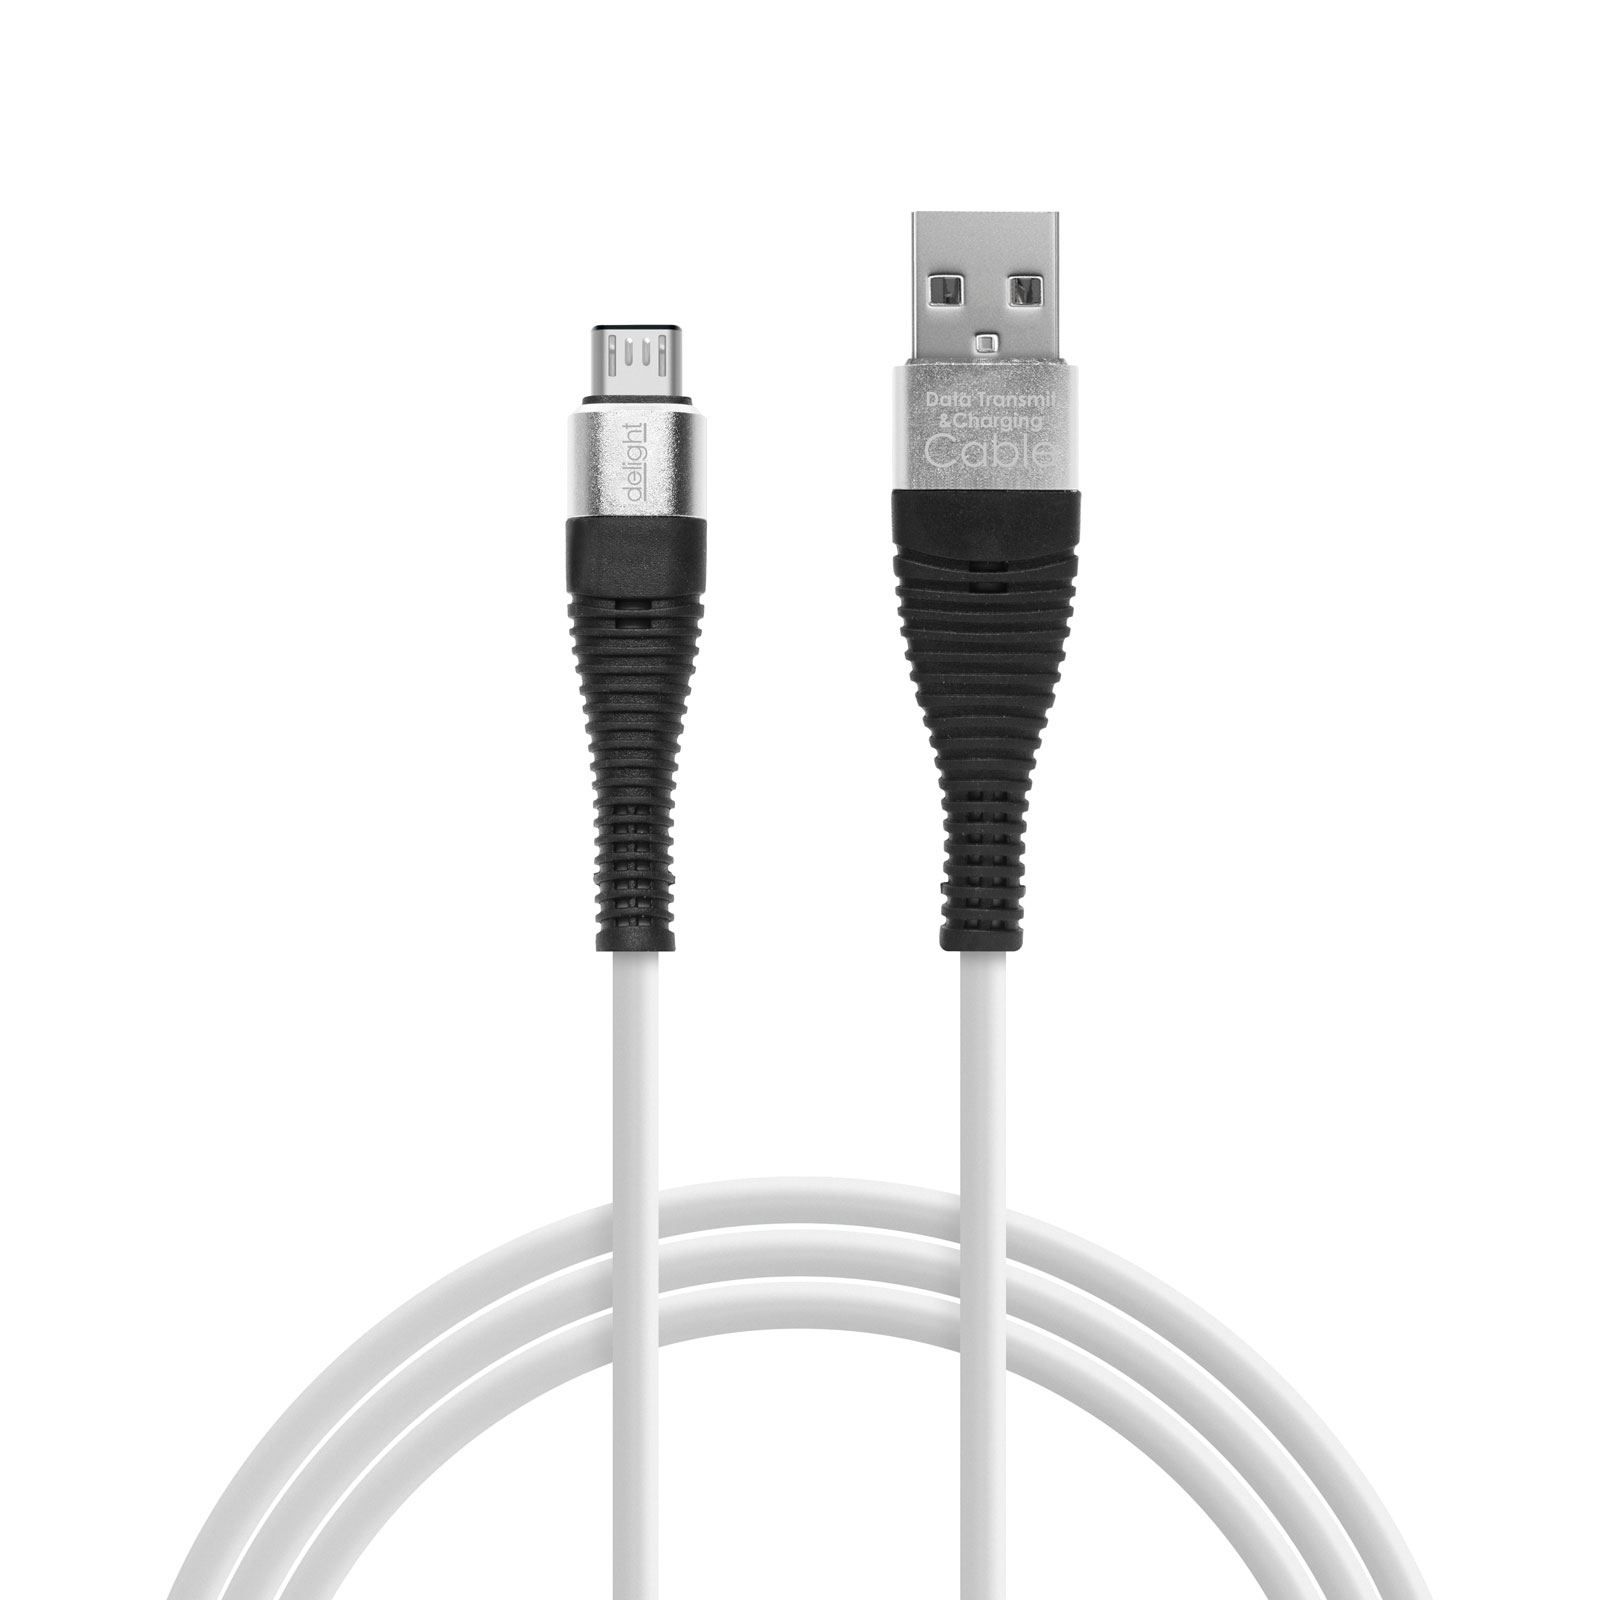 Delight - Cablu de date , Micro USB, invelis siliconic, 4 culori, 1 m